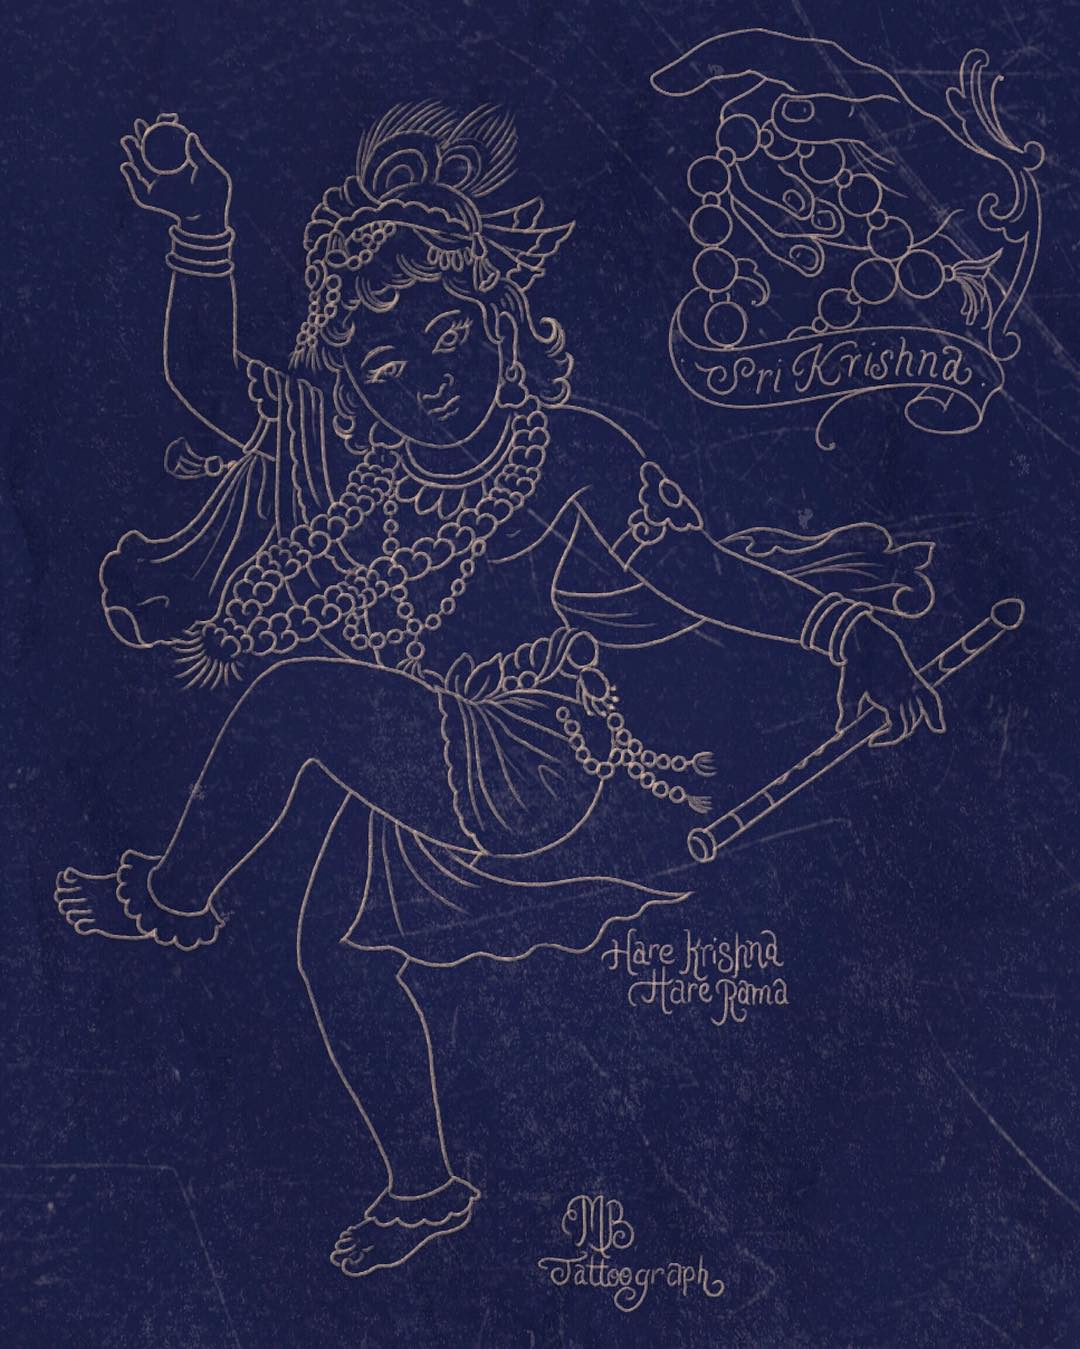 Sri Krishna blue print,

#matthiasblossfeld #sideshowtraveling #finelinetattoo #